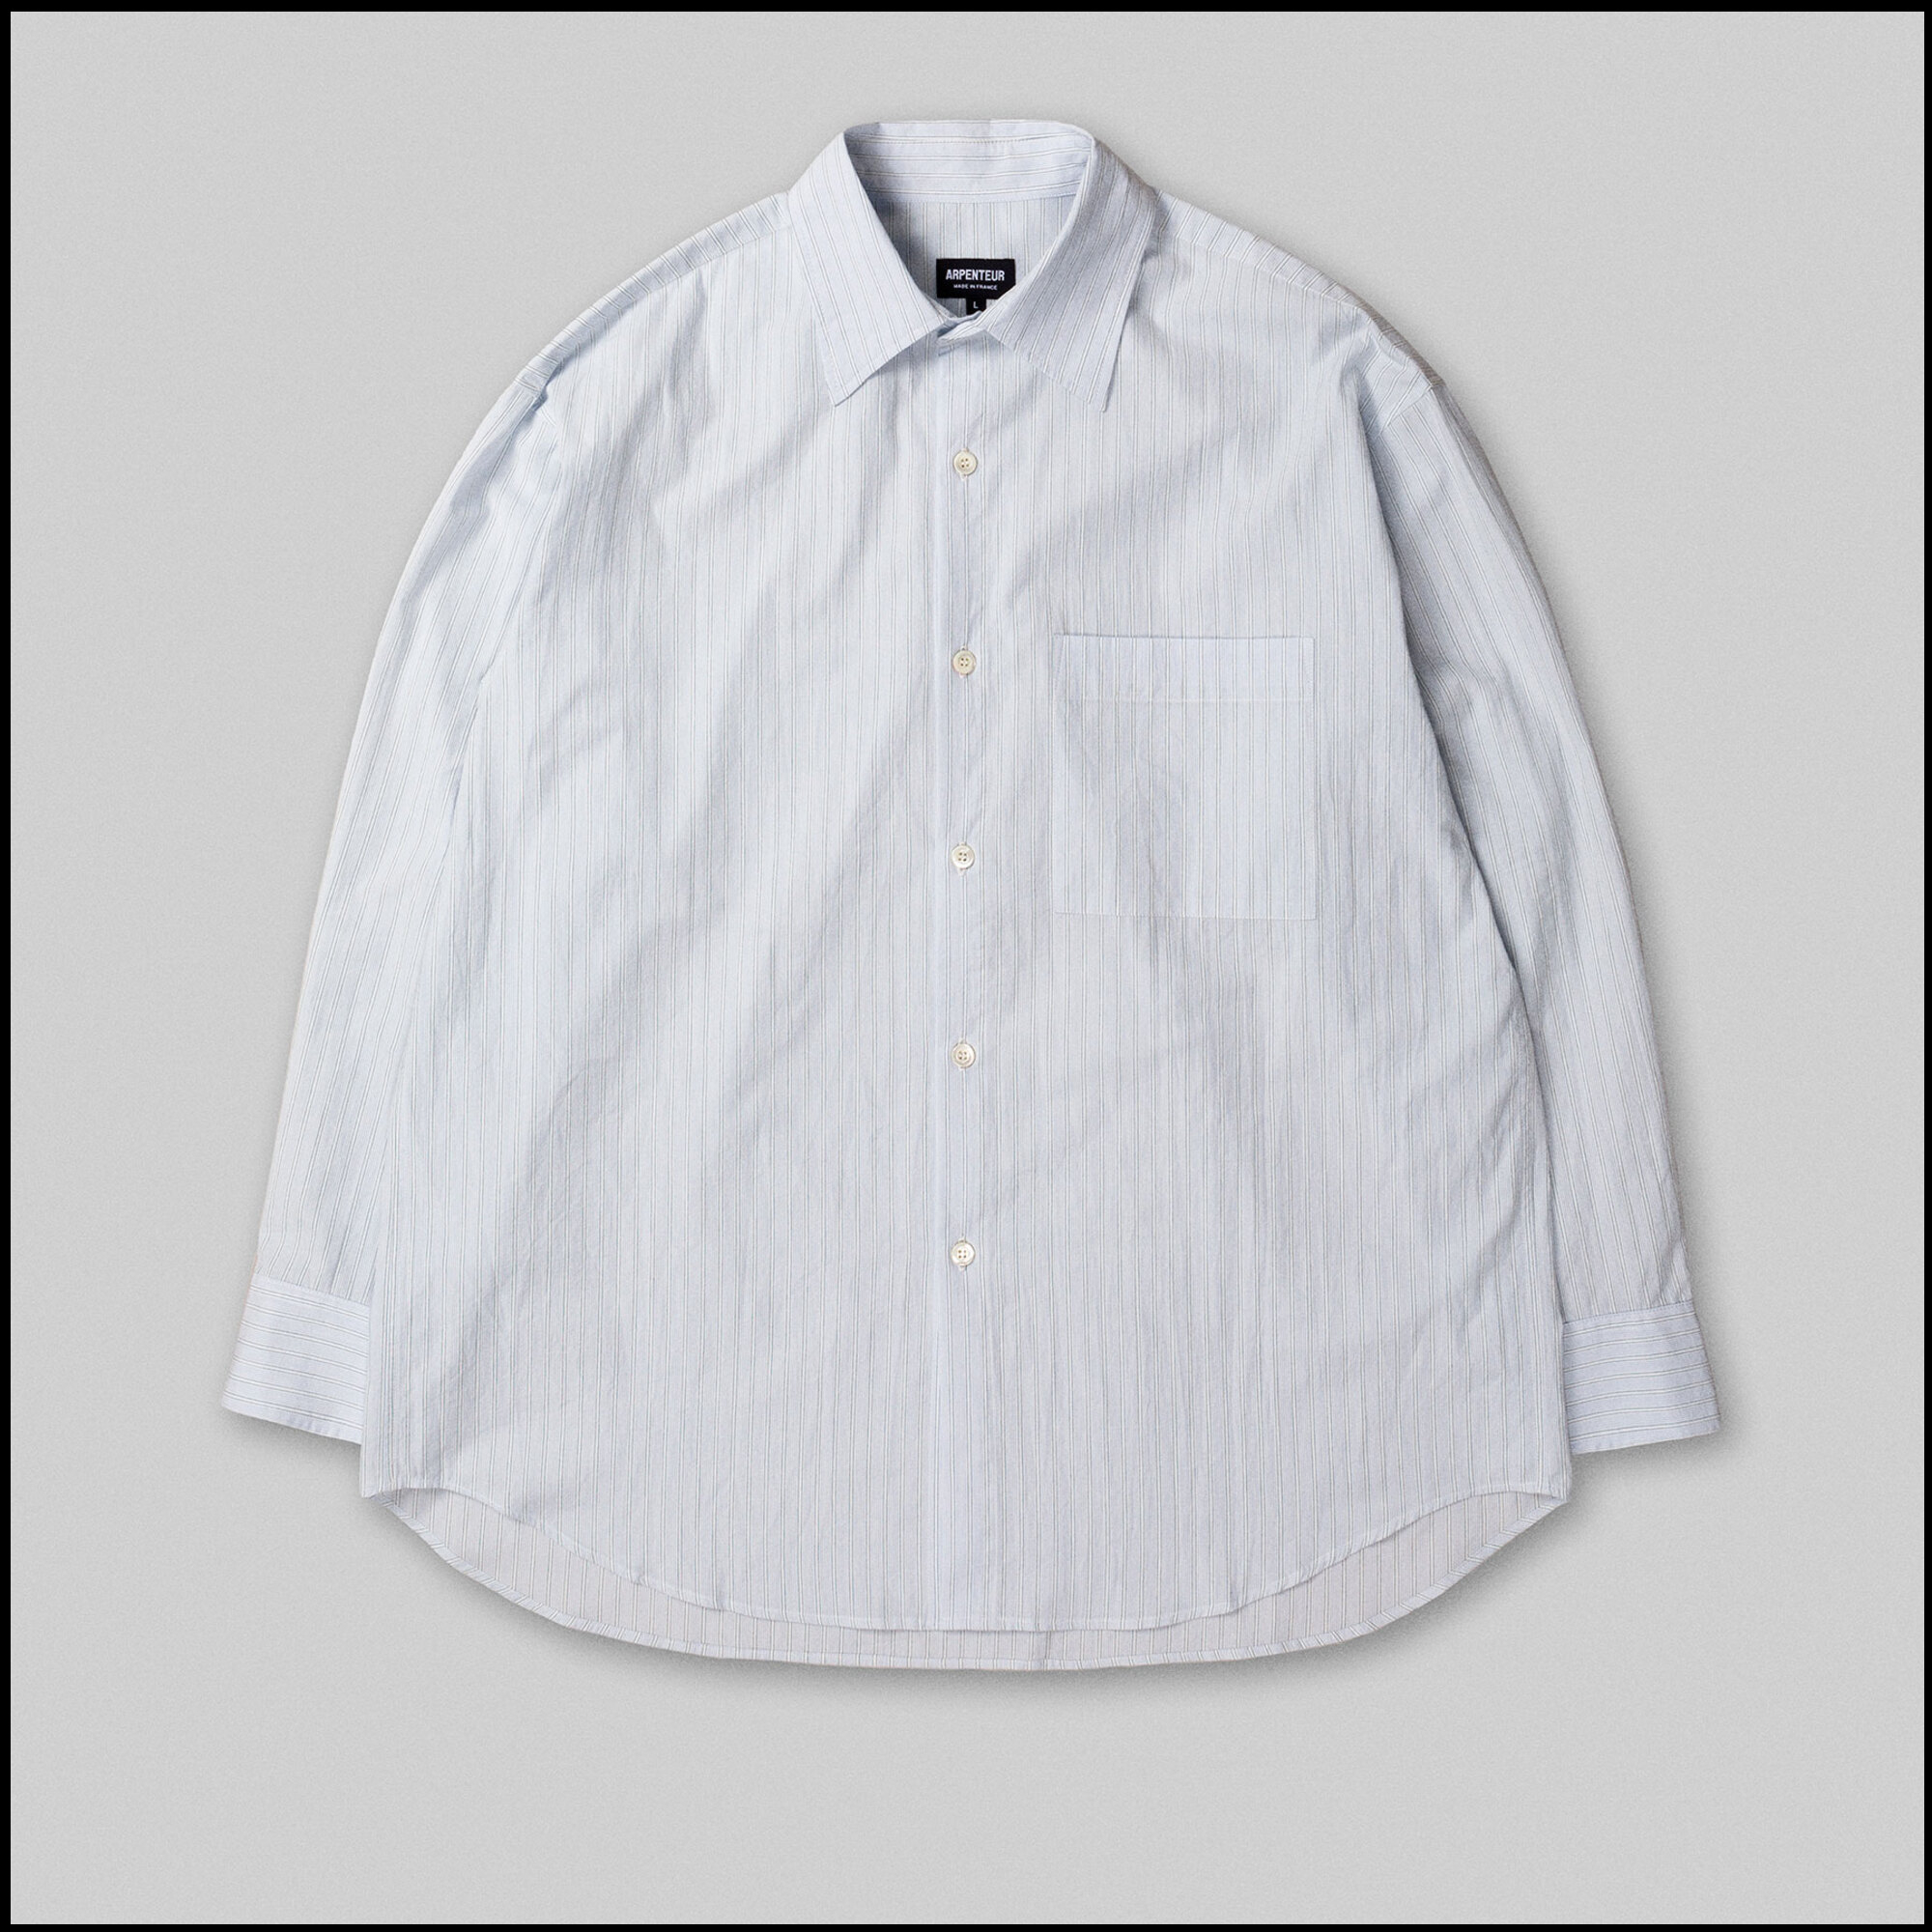 DORIS shirt by Arpenteur in Retro stripes color